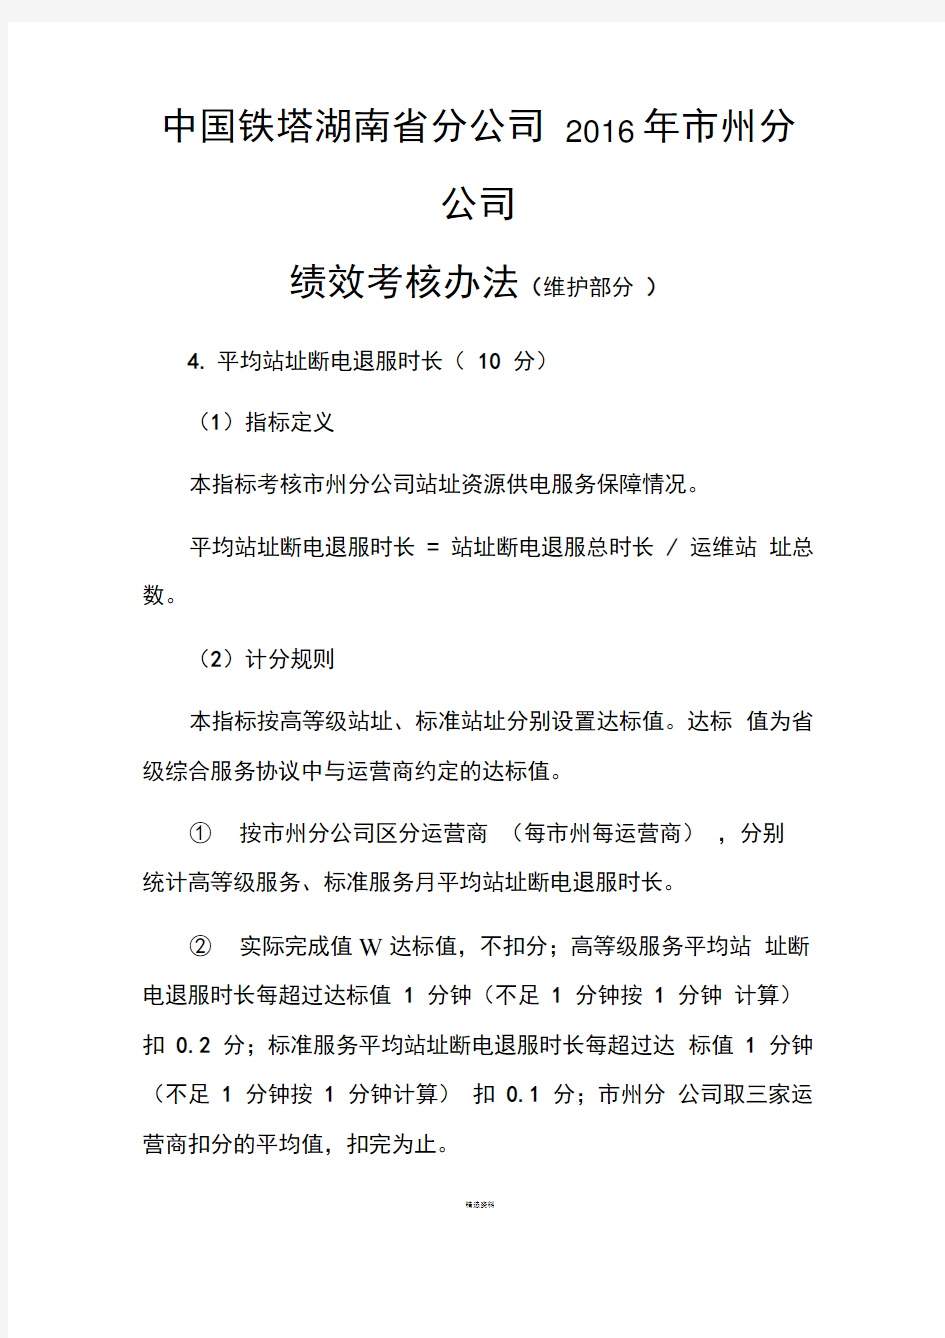 中国铁塔公司绩效考核办法(维护部分)